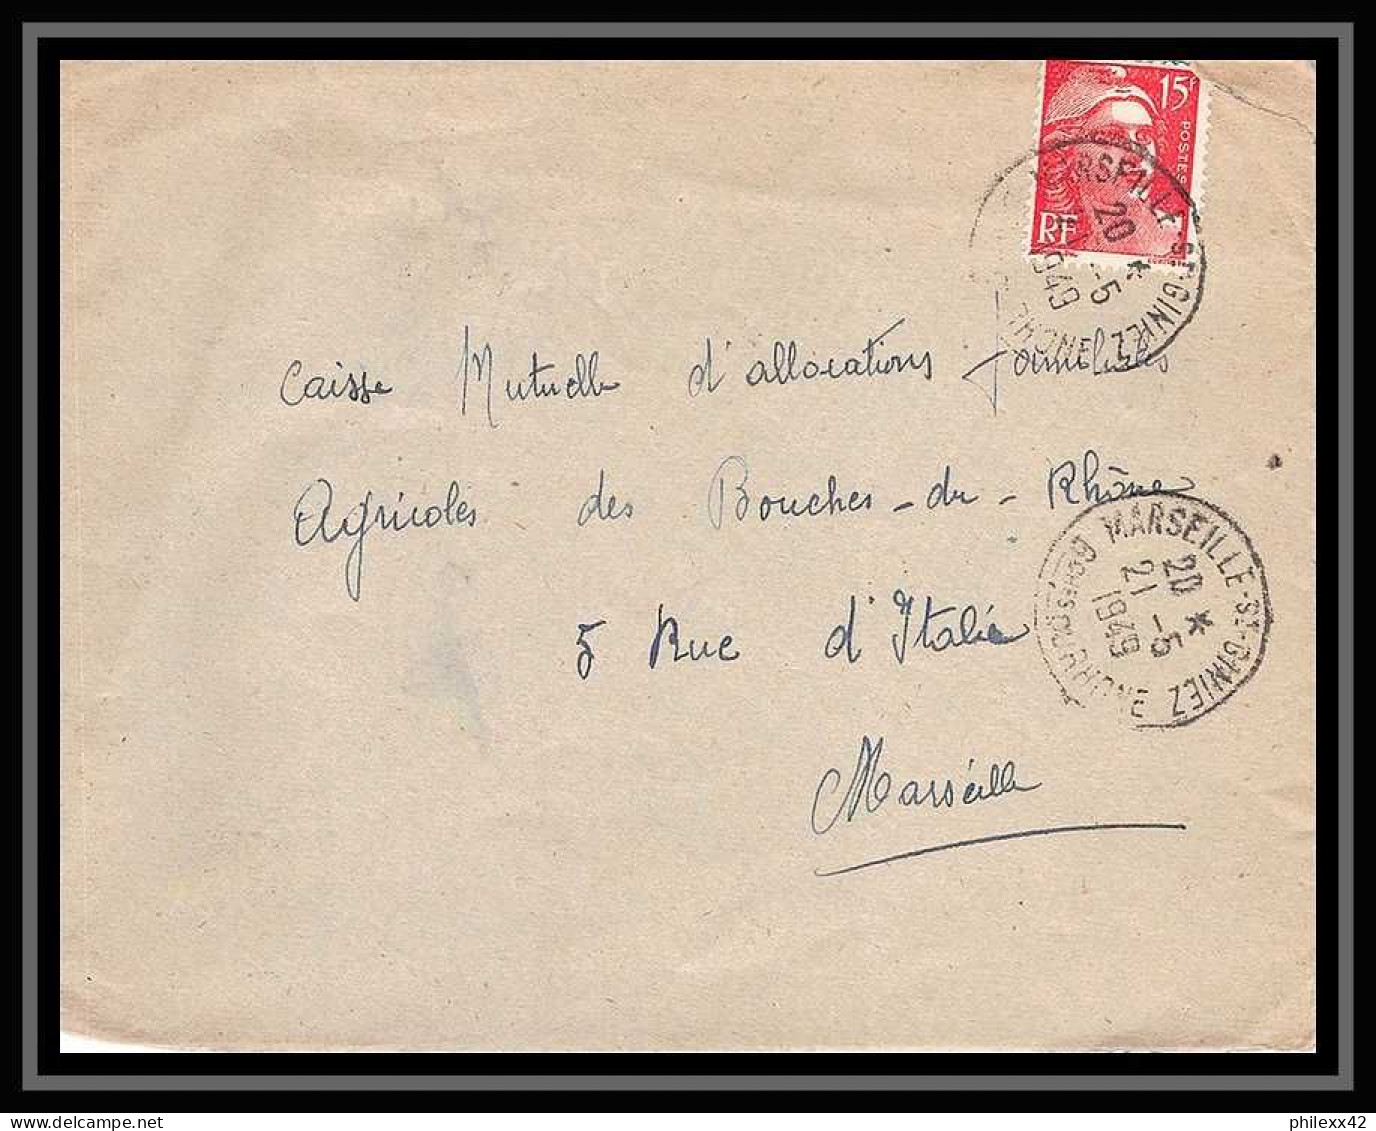 107304 lot de 17 Lettres Bouches du rhone dont recommandé Marseille pour oblitérations des rues